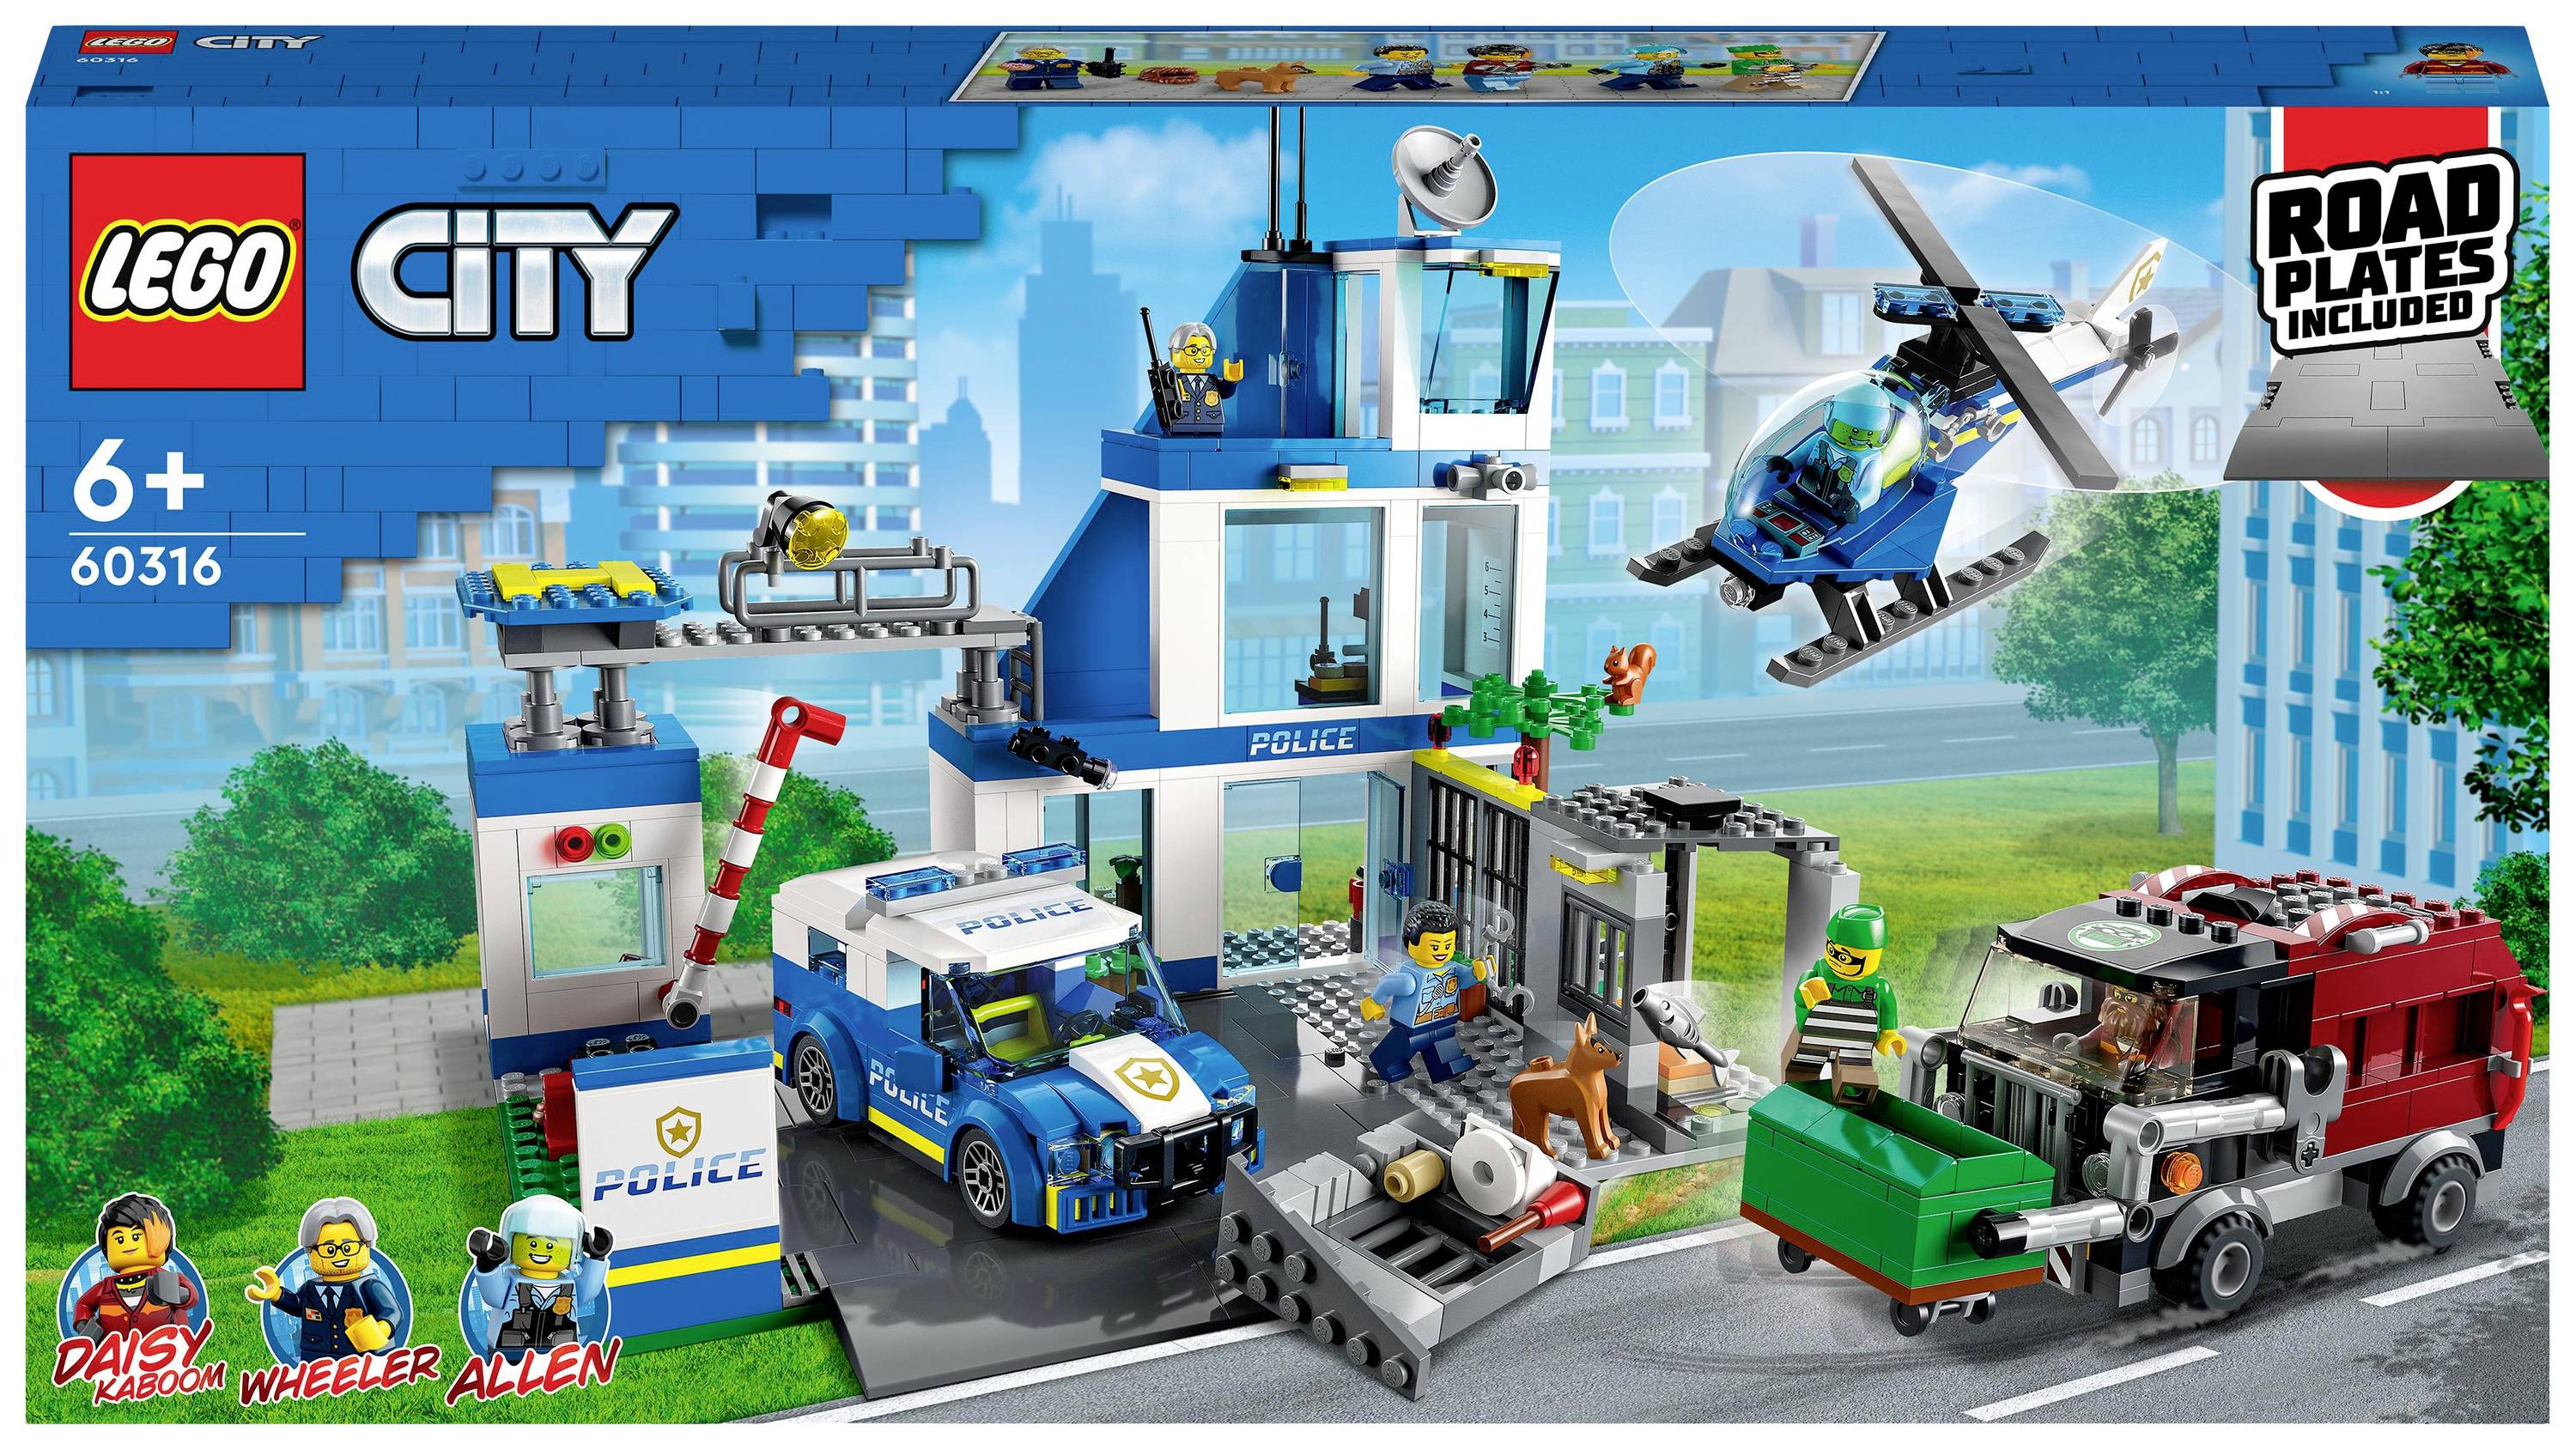 Collega rok rekken LEGO® CITY 60316 Politiebureau kopen ? Conrad Electronic